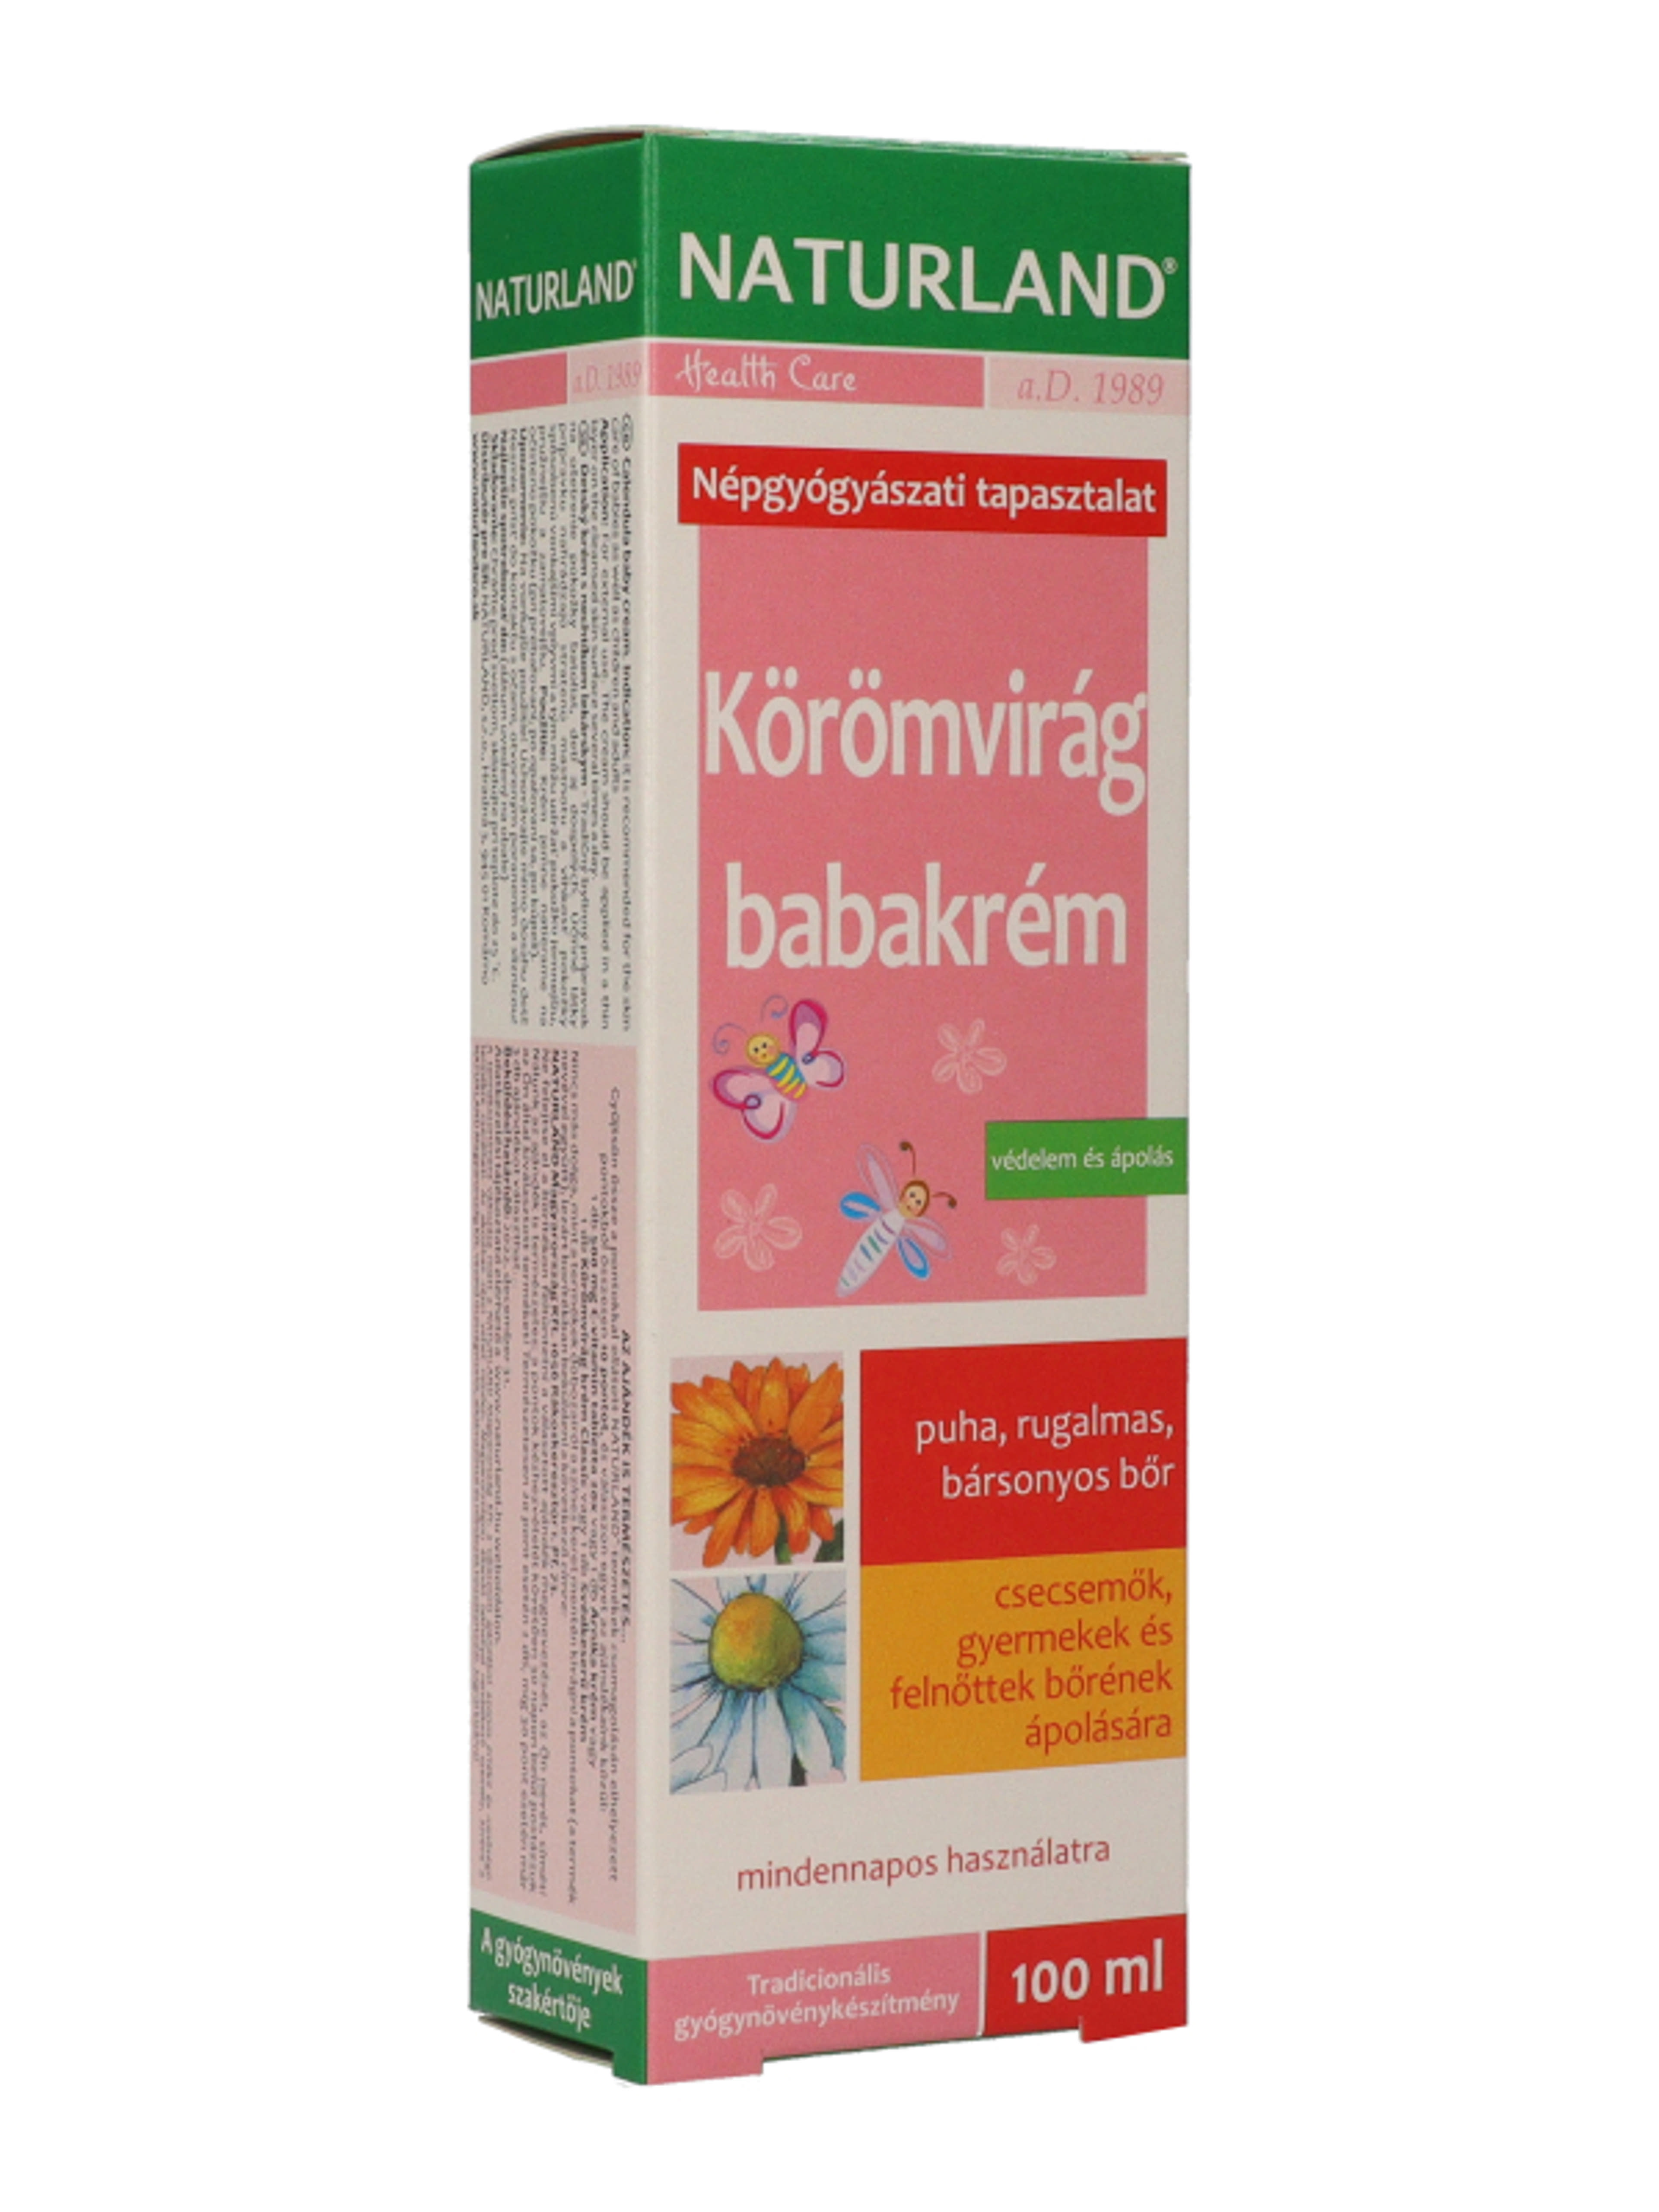 Naturland körömvirág babakrém - 100 ml-4